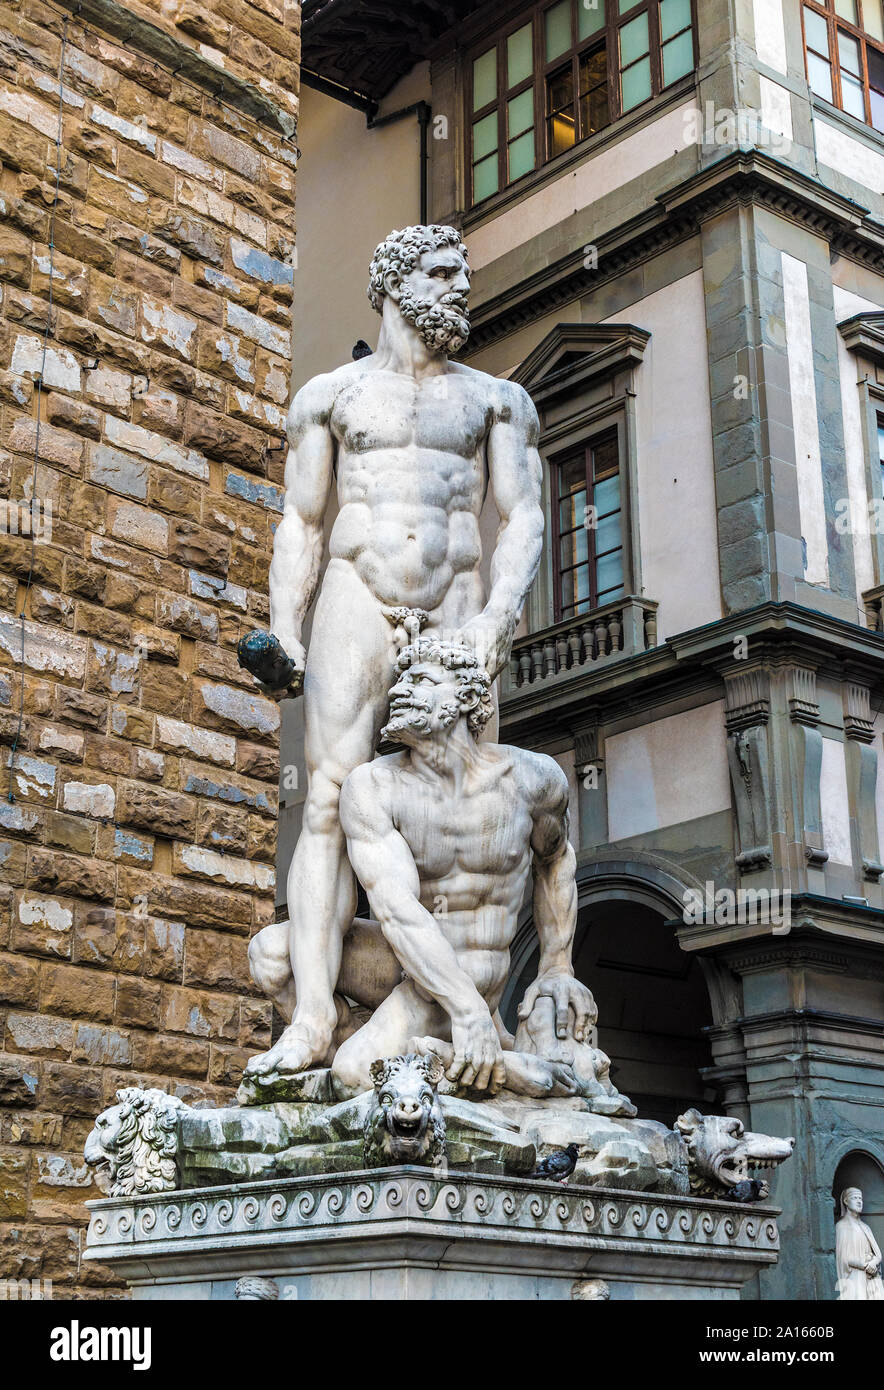 La escultura de mármol blanco de Hércules y cacus por Baccio Bandinelli en la Piazza della Signoria en la ciudad italiana de Florencia. Foto de stock